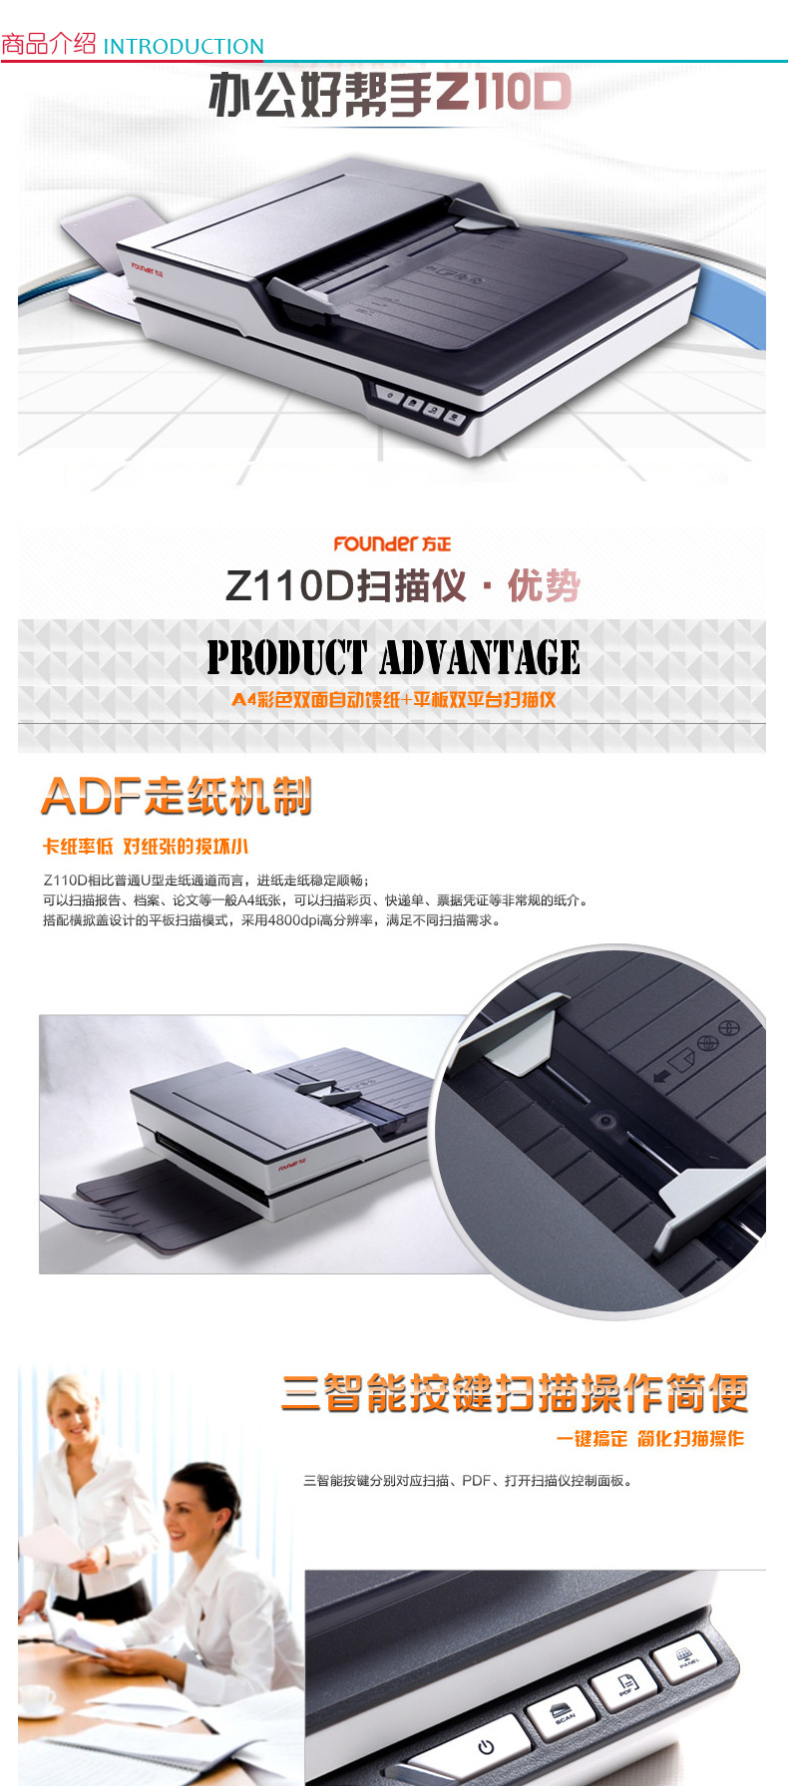 方正 Founder A4双面自动高速馈纸 双平台扫描仪 Z110D 